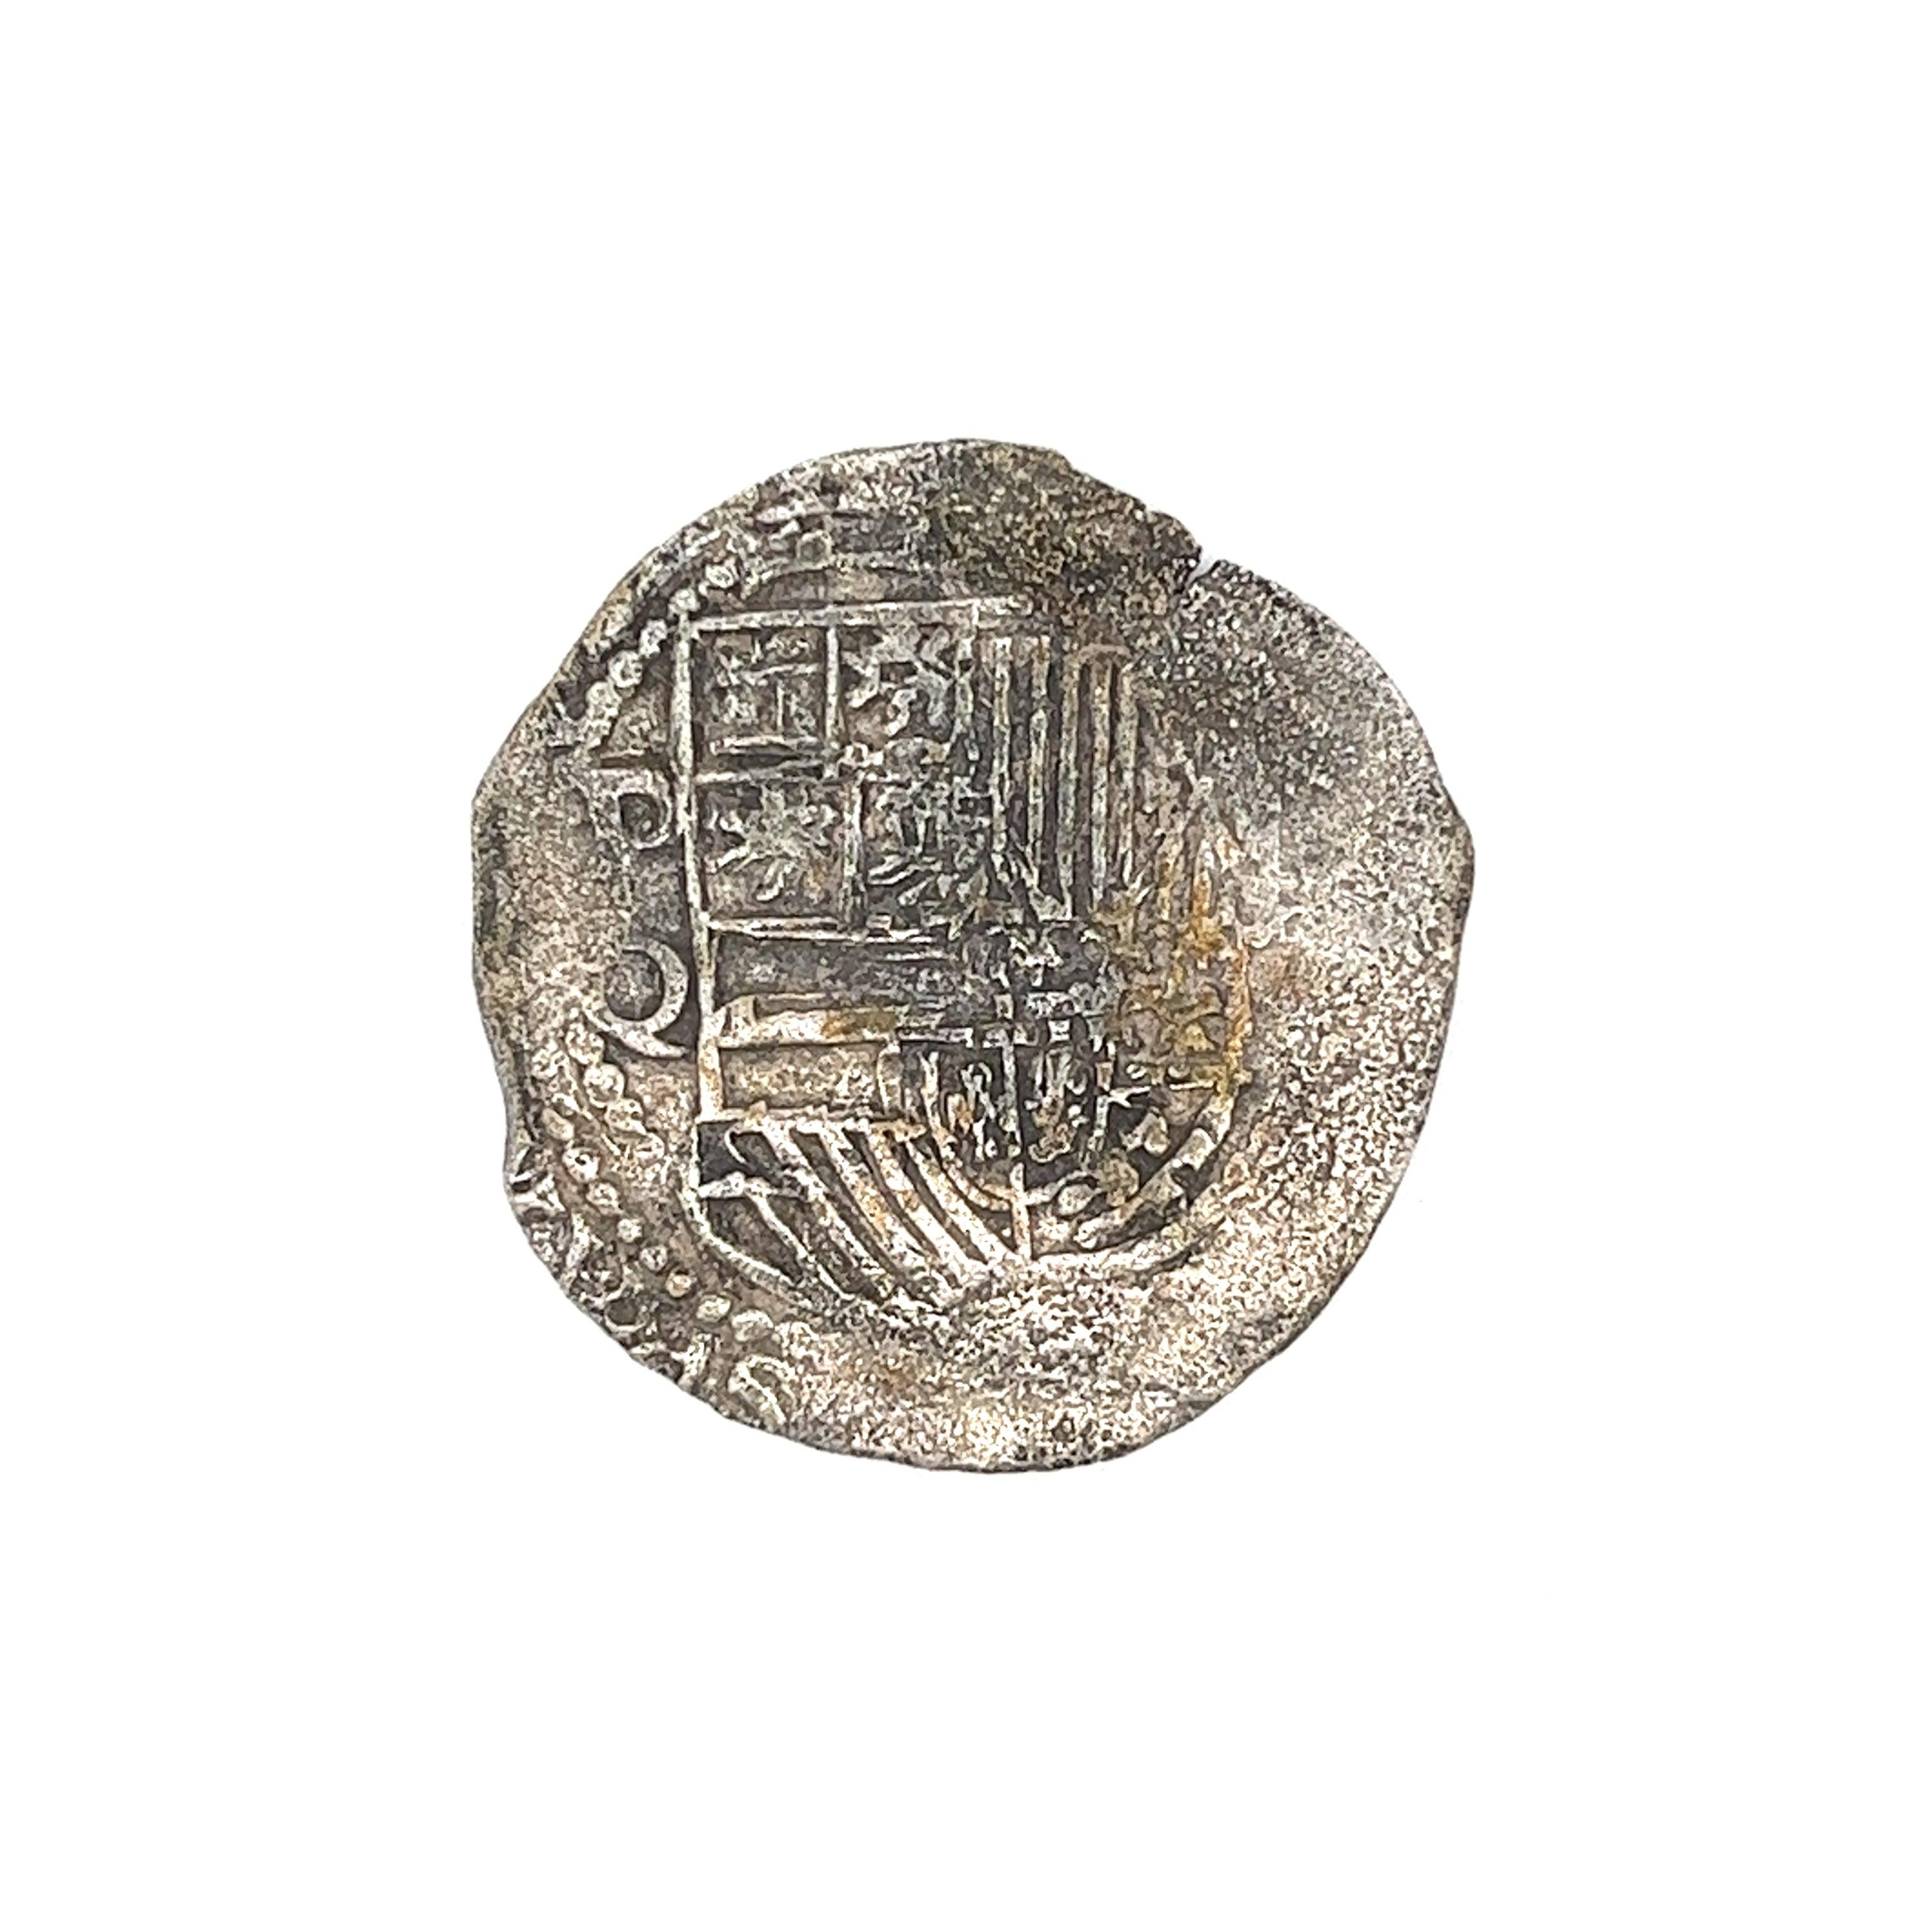 Original antike Atocha Münze 8 Reale Grade 1 mit dem Original Mel Fisher Zertifikat. 

Grad 1 bedeutet, dass die Münze aus der Mitte des Trümmerfeldes geborgen wurde und im Vergleich zu Grad 2 oder 3 nur sehr wenig Korrosion aufweist. Die Münzstätte